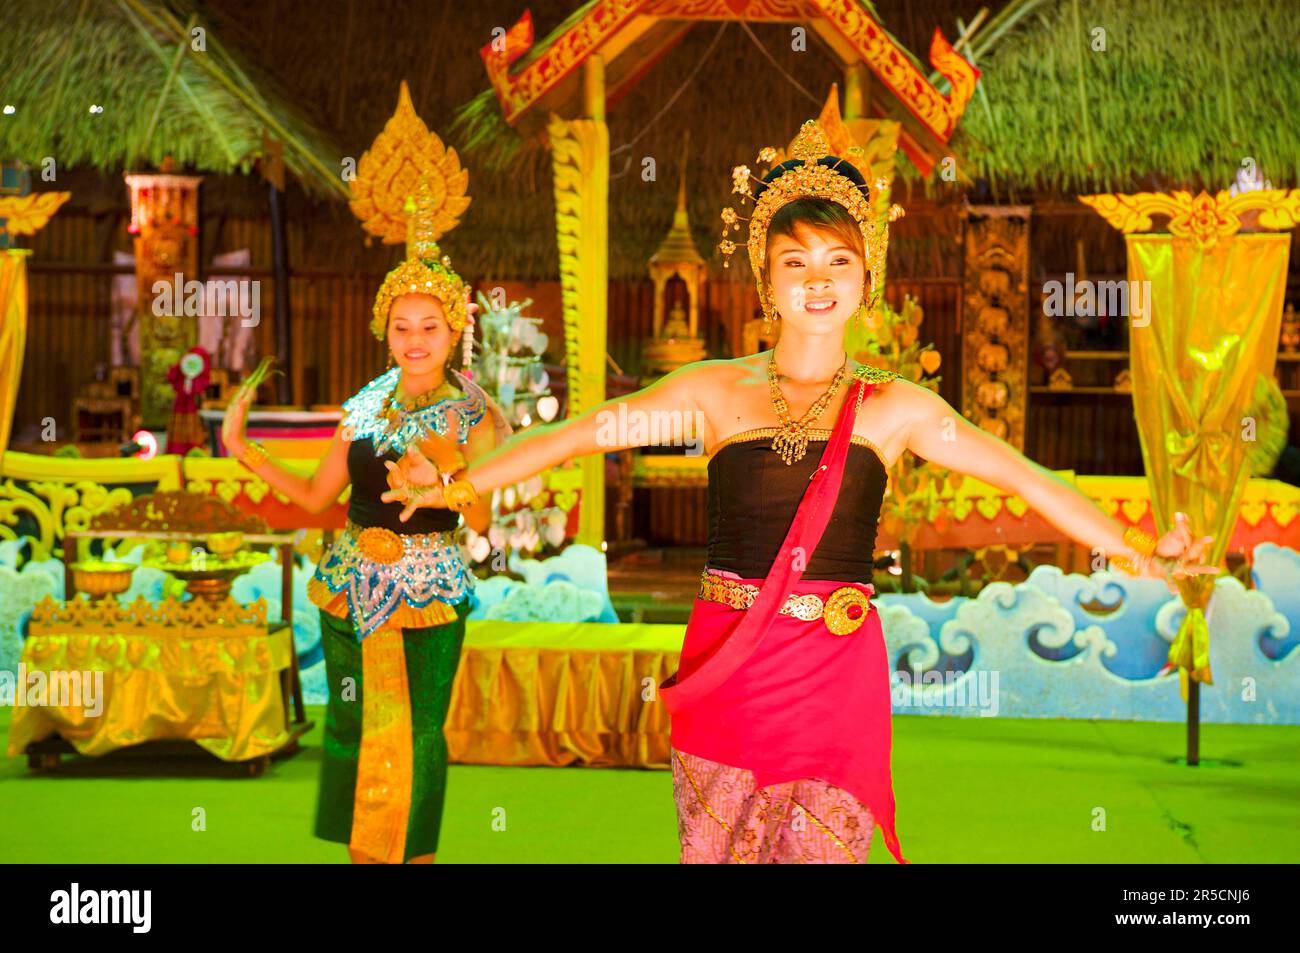 Spectacle de danse dans la ville de Phuket, île de Phuket, Thaïlande Banque D'Images